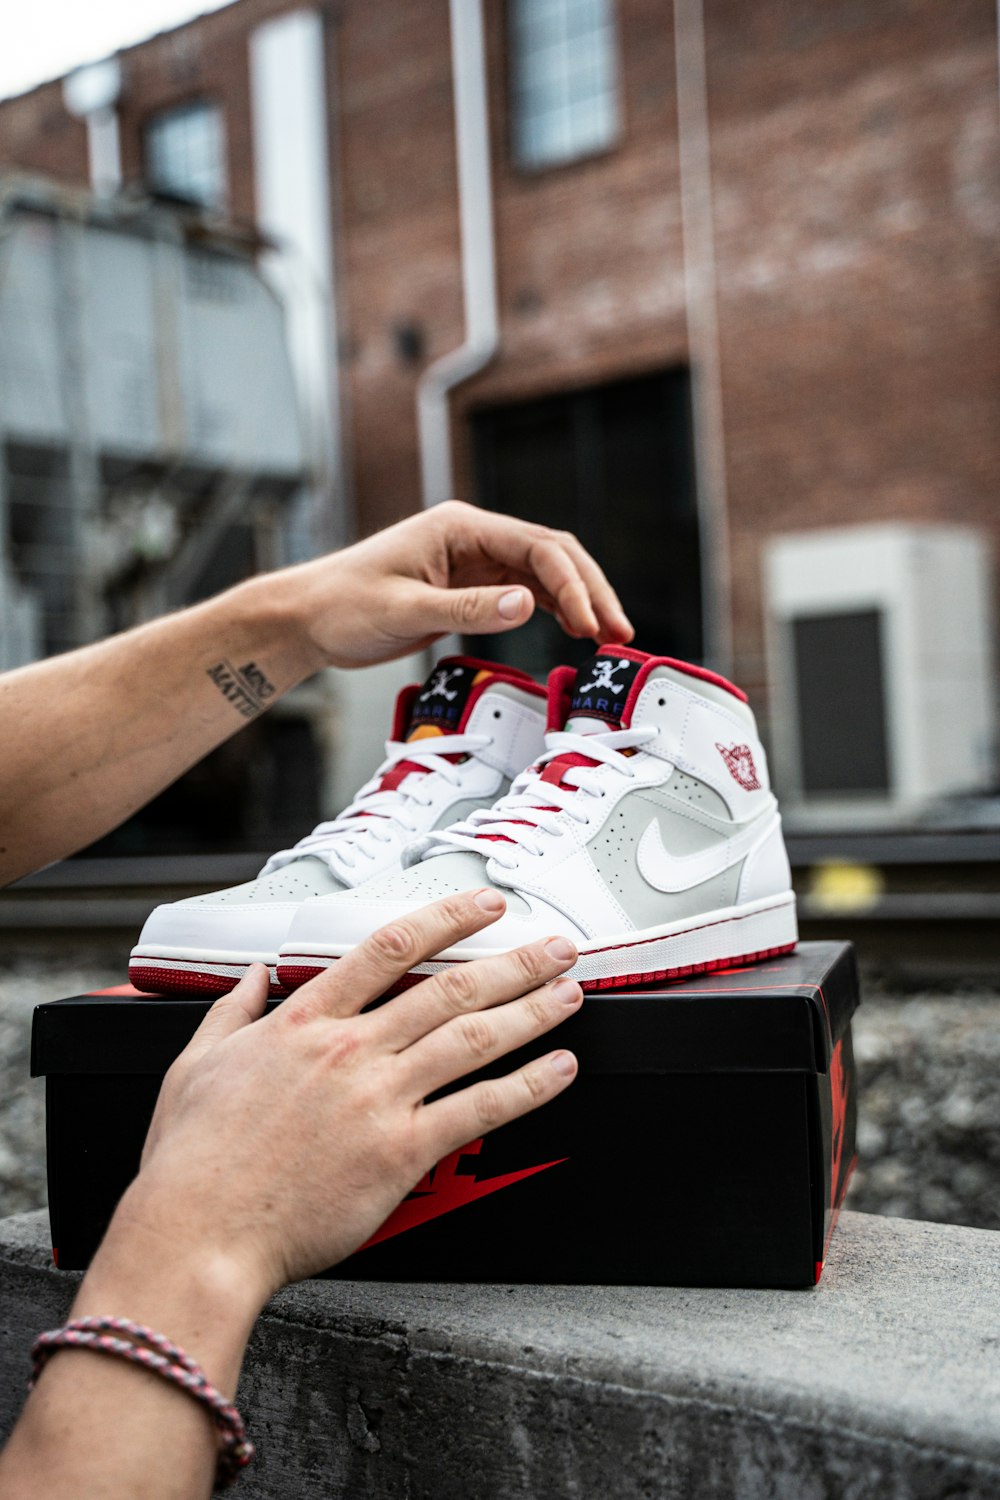 Foto Persona sosteniendo Nike Air Max 90 blanca y roja – Imagen  Harrisonburg gratis en Unsplash